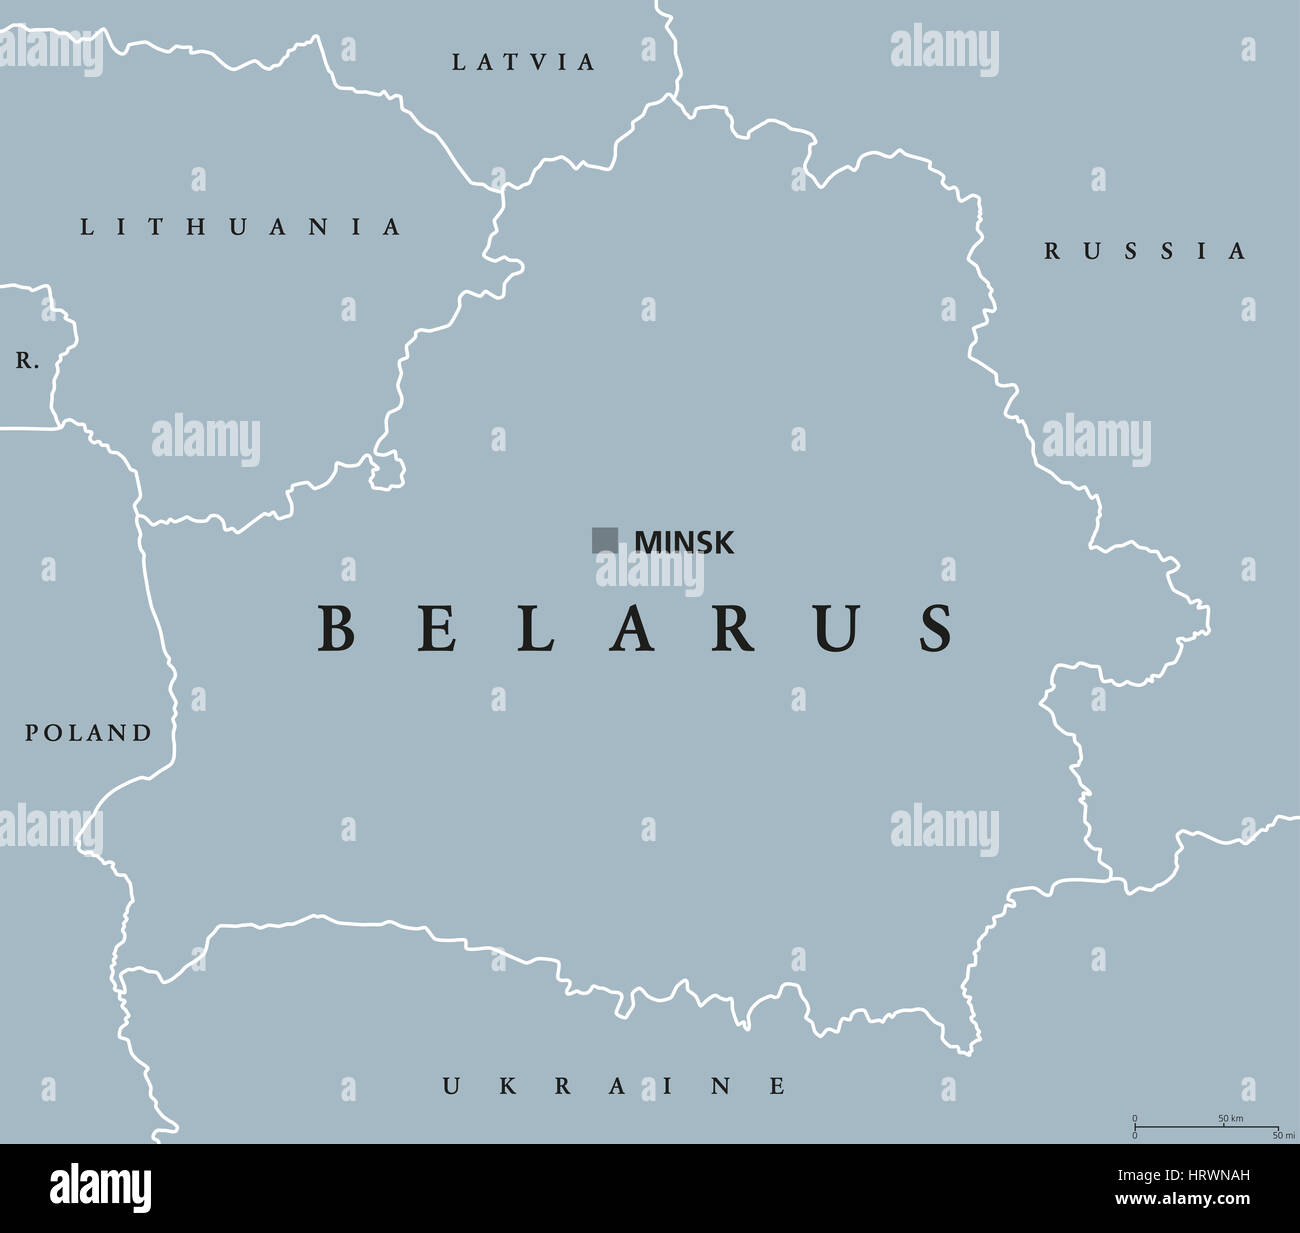 Belarus politische Karte mit Hauptstadt Minsk, nationale Grenzen und Nachbarn. Früher bekannt als Weißrussland. Republik in Osteuropa. Stockfoto